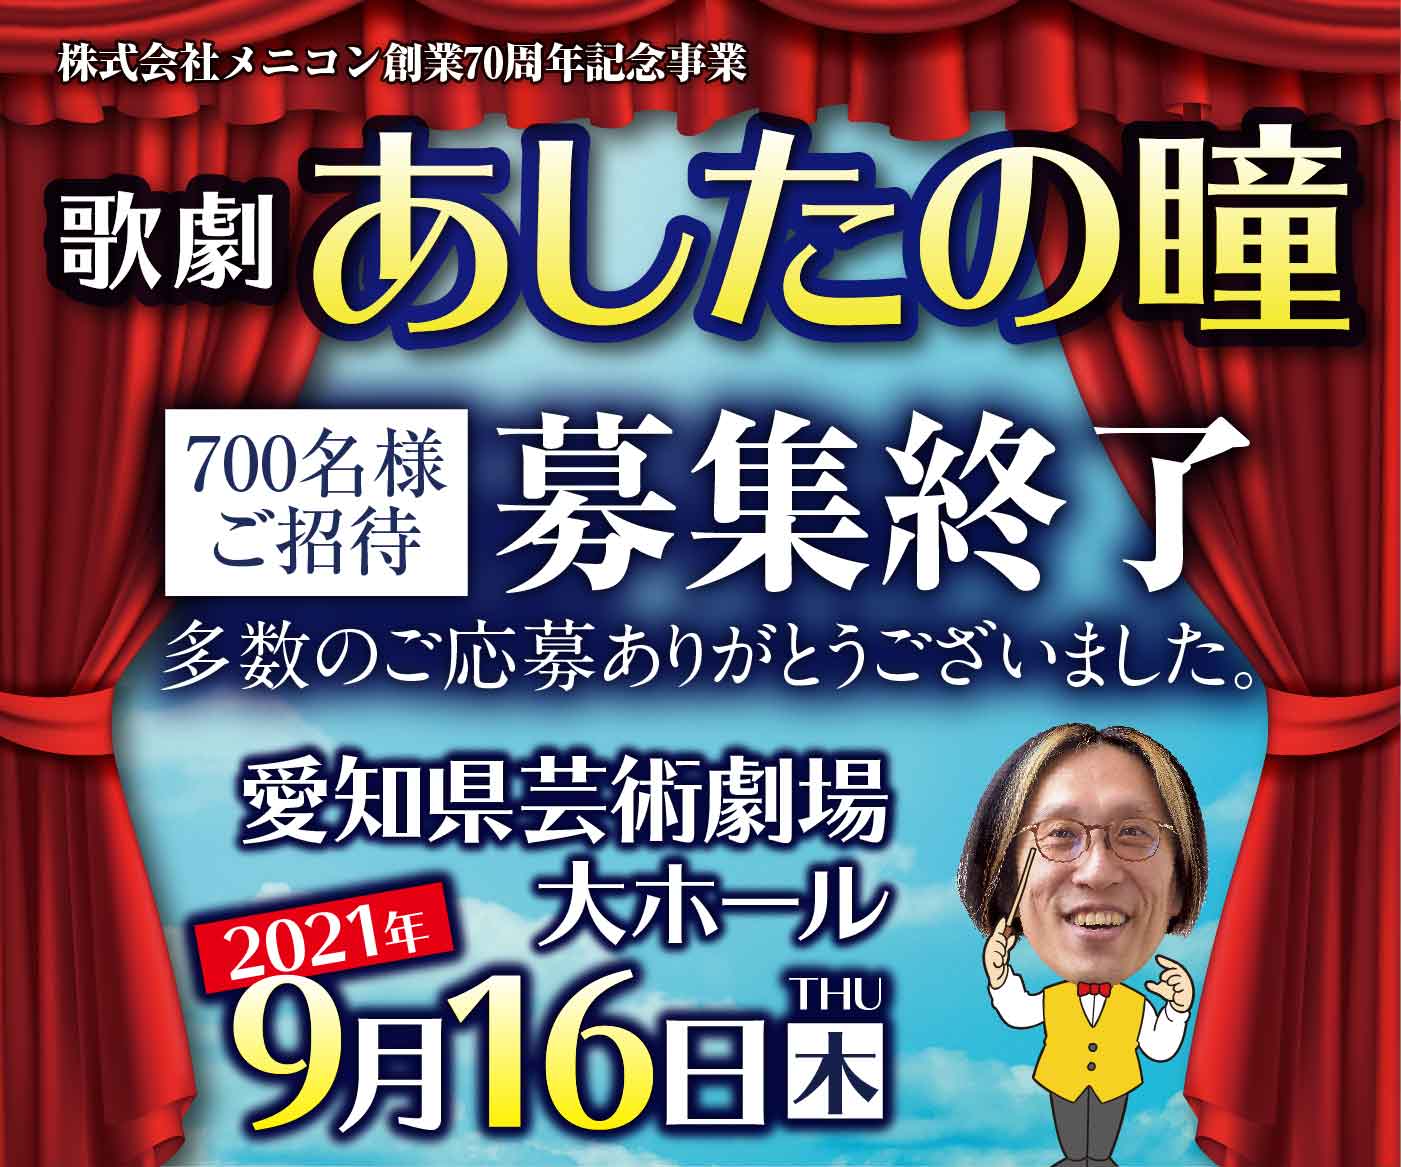 歌劇 あしたの瞳 2021年9月16日 木曜日 愛知県芸術劇場大ホールにて上演決定